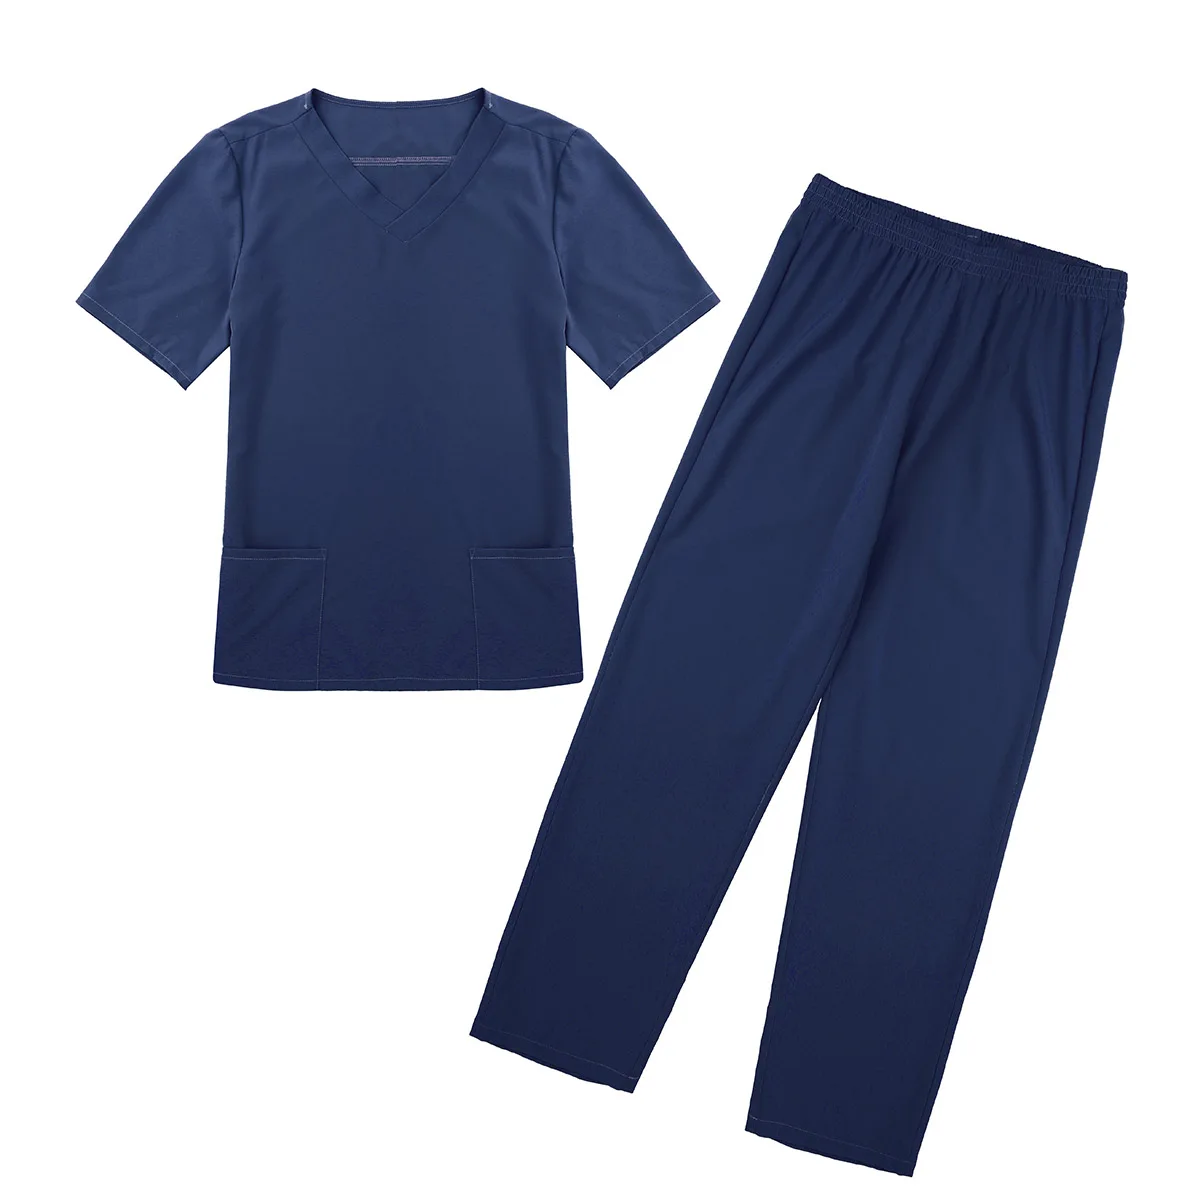 Взрослые мужские медицинские Медицинские костюмы с короткими рукавами Топ и длинные штаны с эластичной талией унисекс лабораторные костюмы для кормления 2 шт - Color: Navy Blue